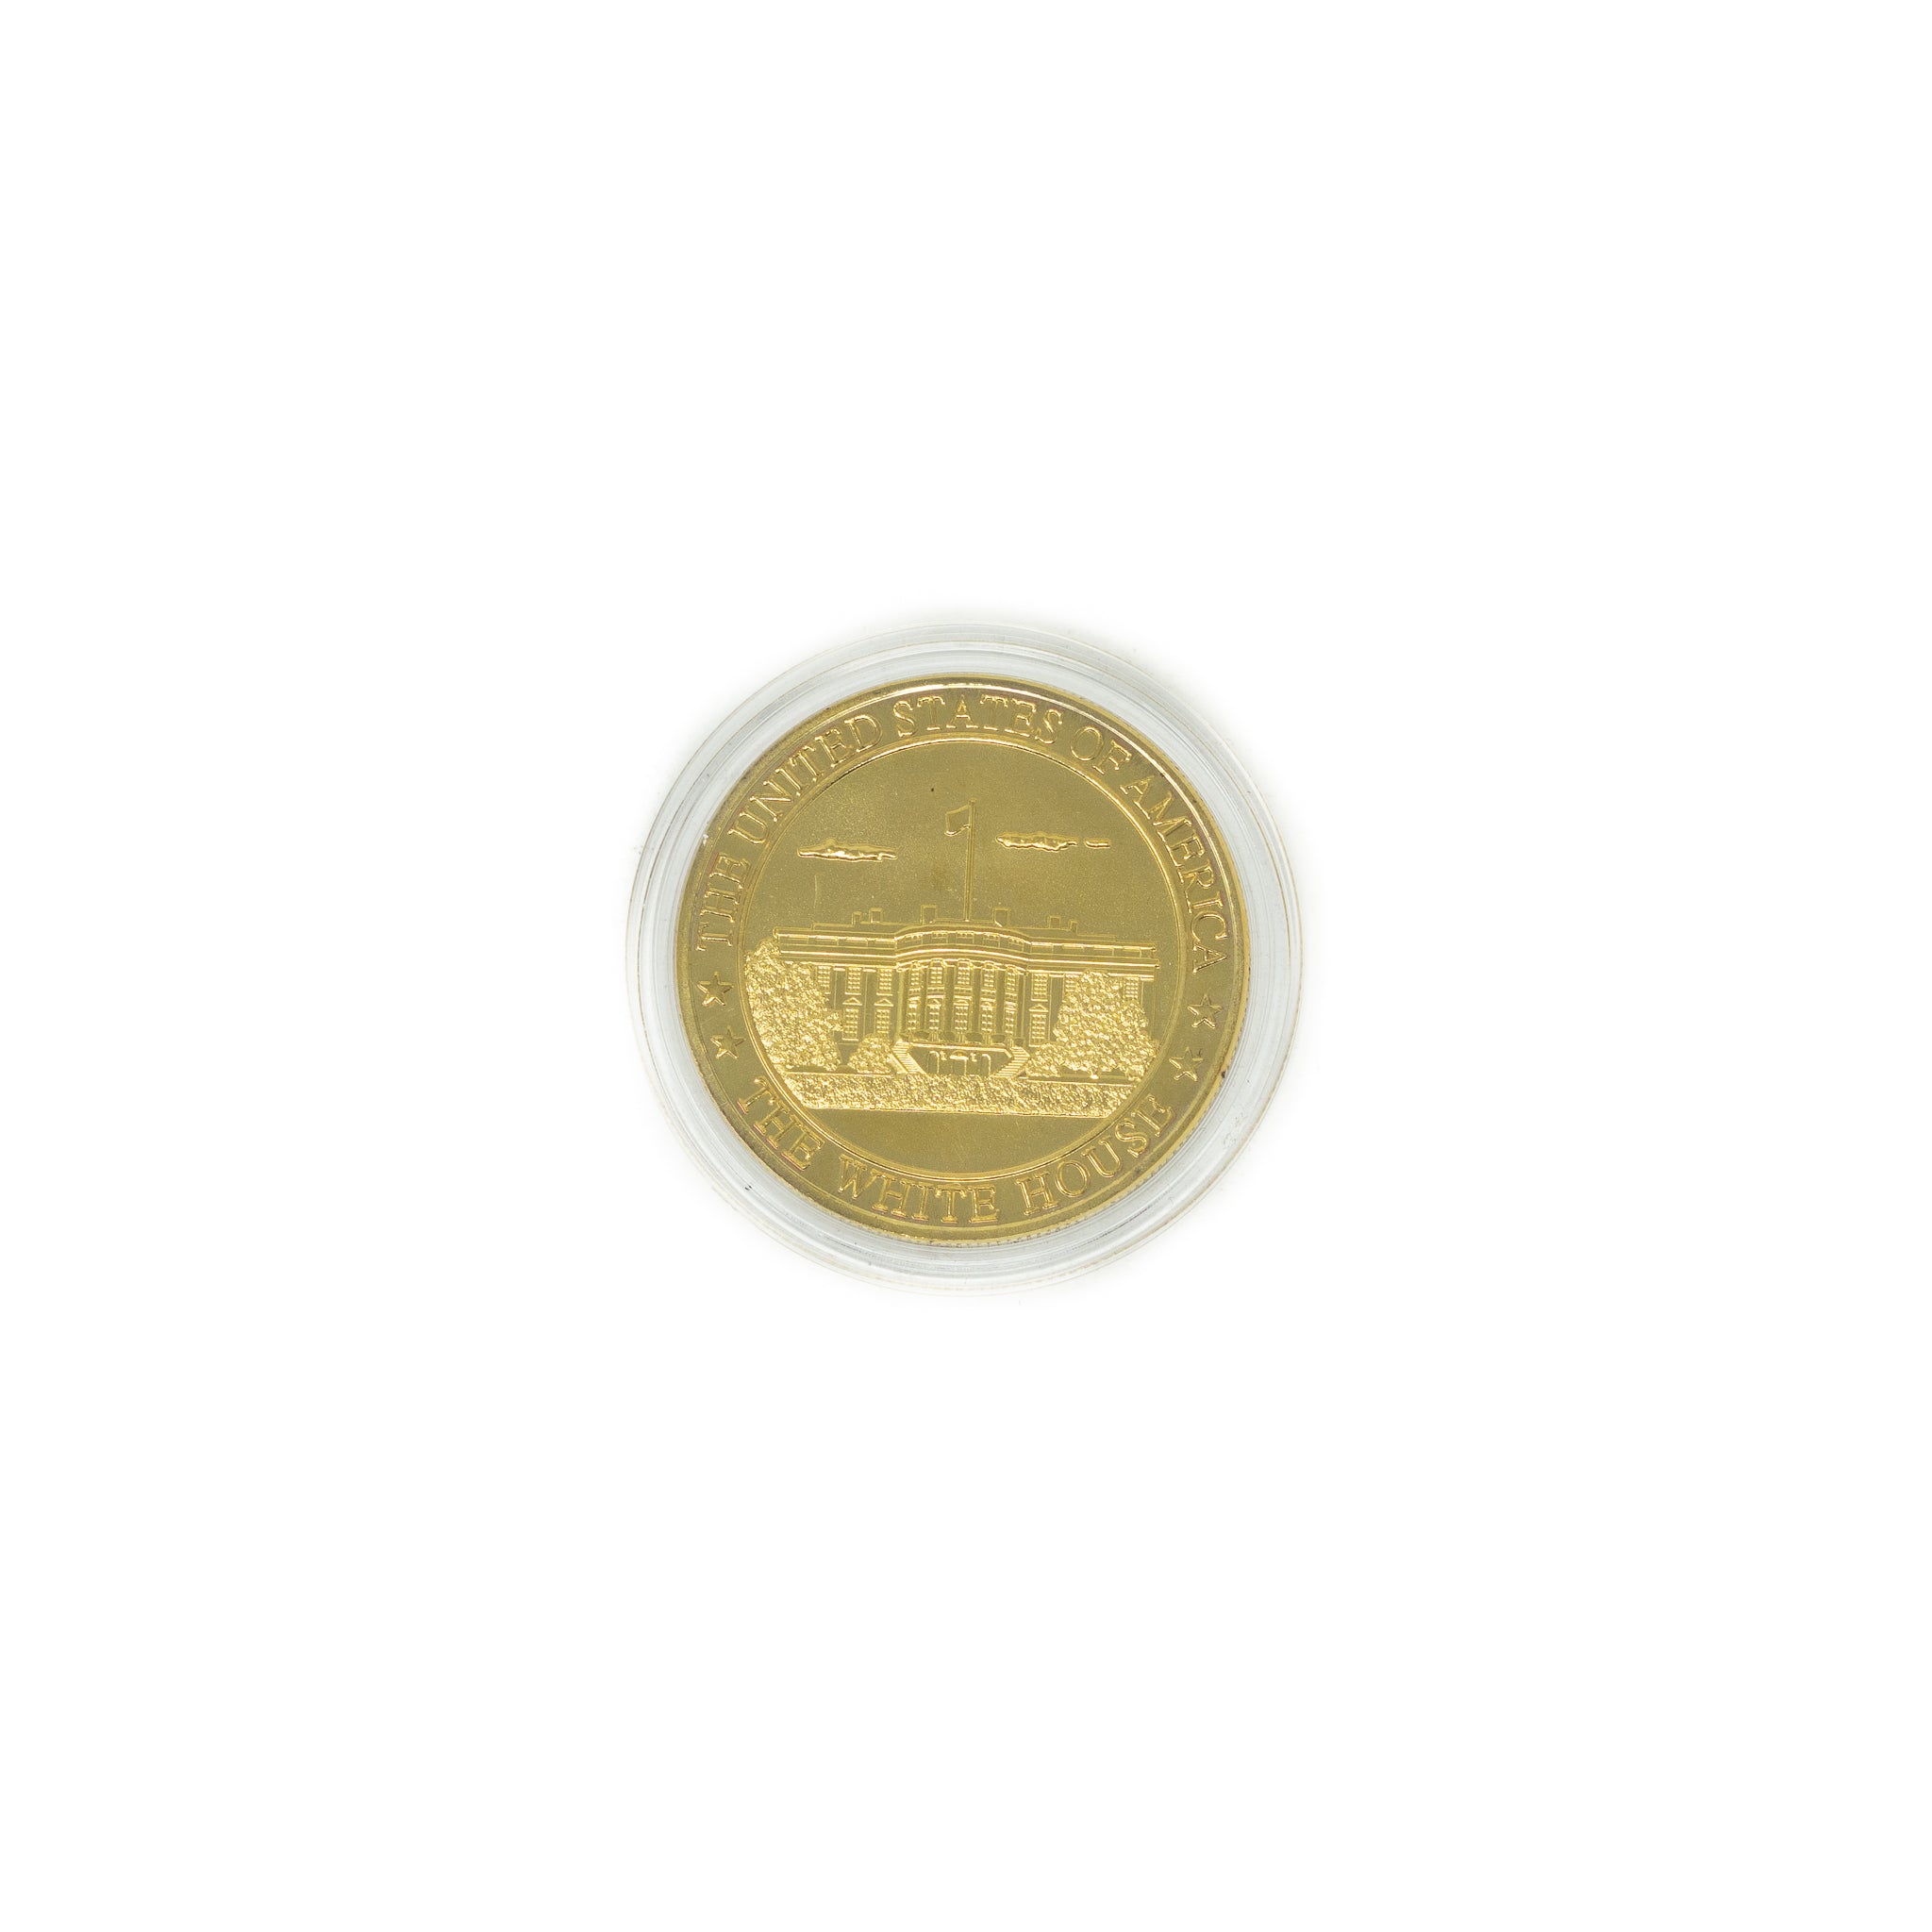 Washington DC Collectible Souvenir Coins